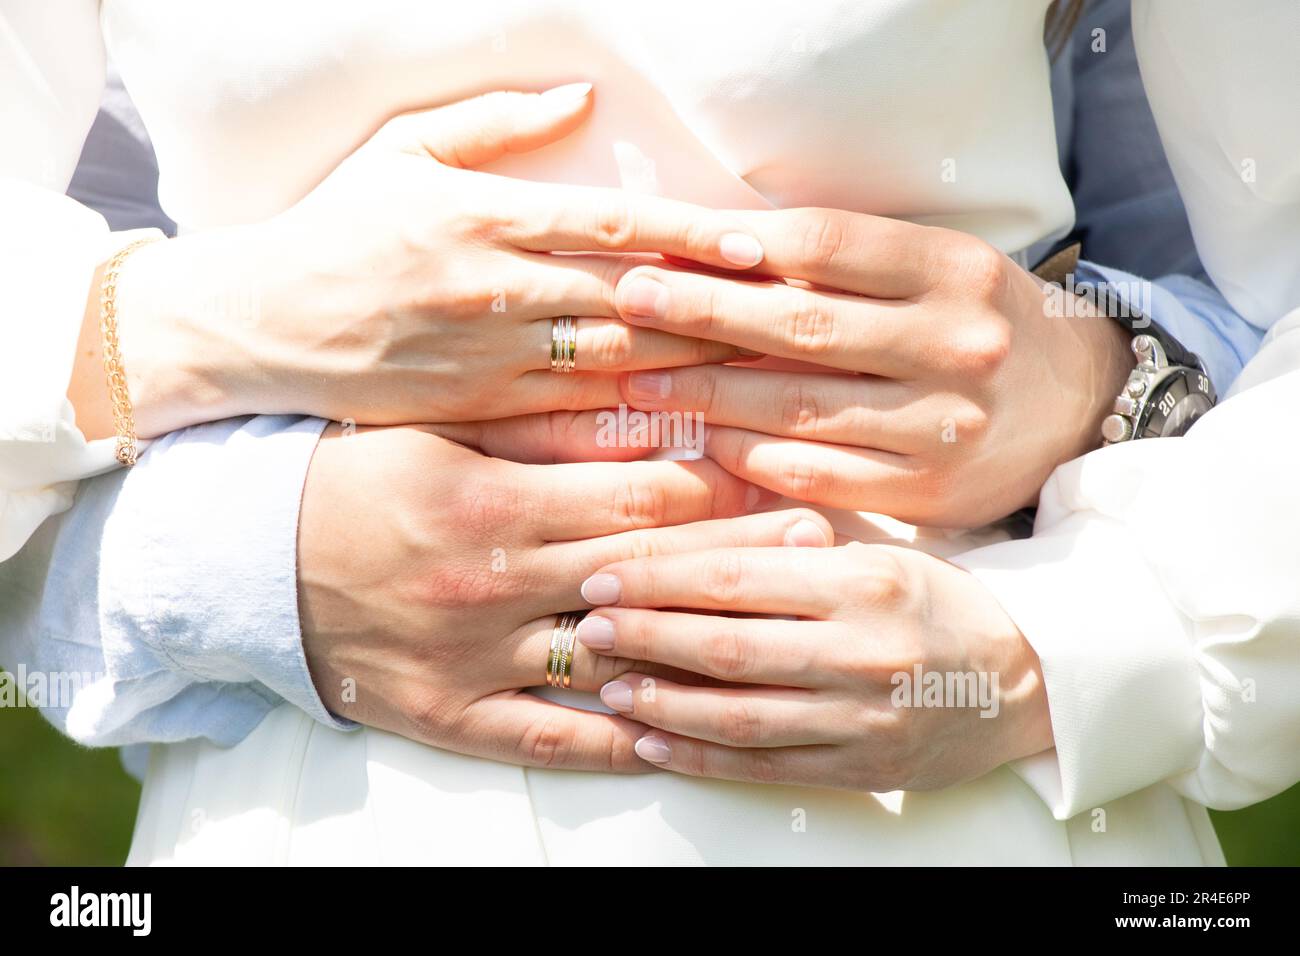 Die Hände der Frischvermählten mit Ringen am Hochzeitstag halten sich gegenseitig, Hochzeit Stockfoto